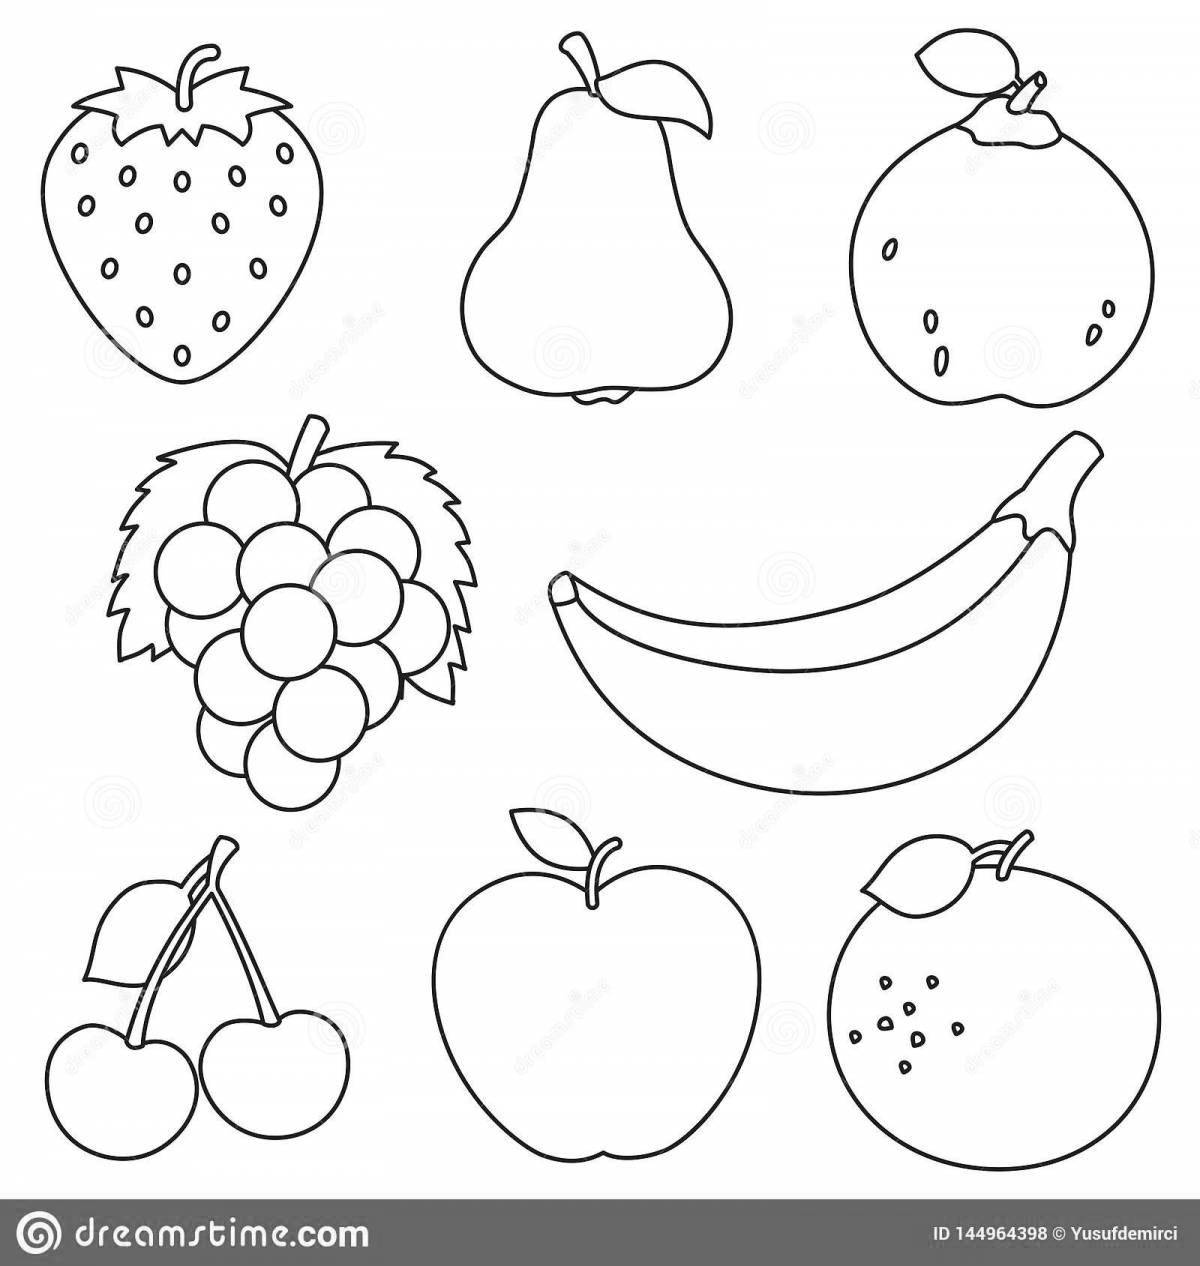 Игривая страница раскраски фруктов для детей 4-5 лет